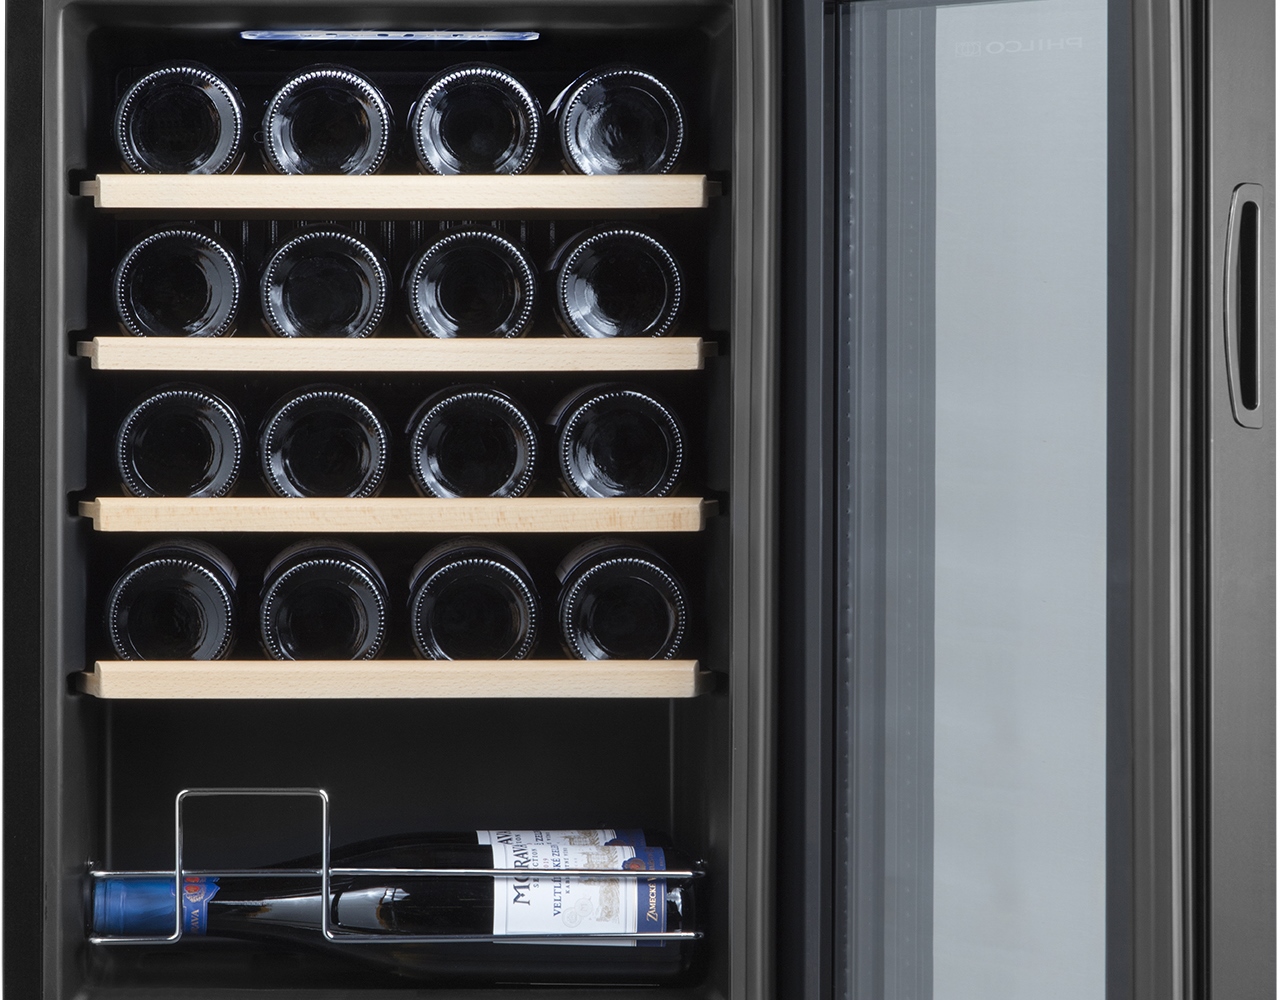 Jednozónová kompresorová vinotéka Philco PW 20 KF poslouží pro správné skladování vína s důrazem na zachování jeho jedinečných vlastností.